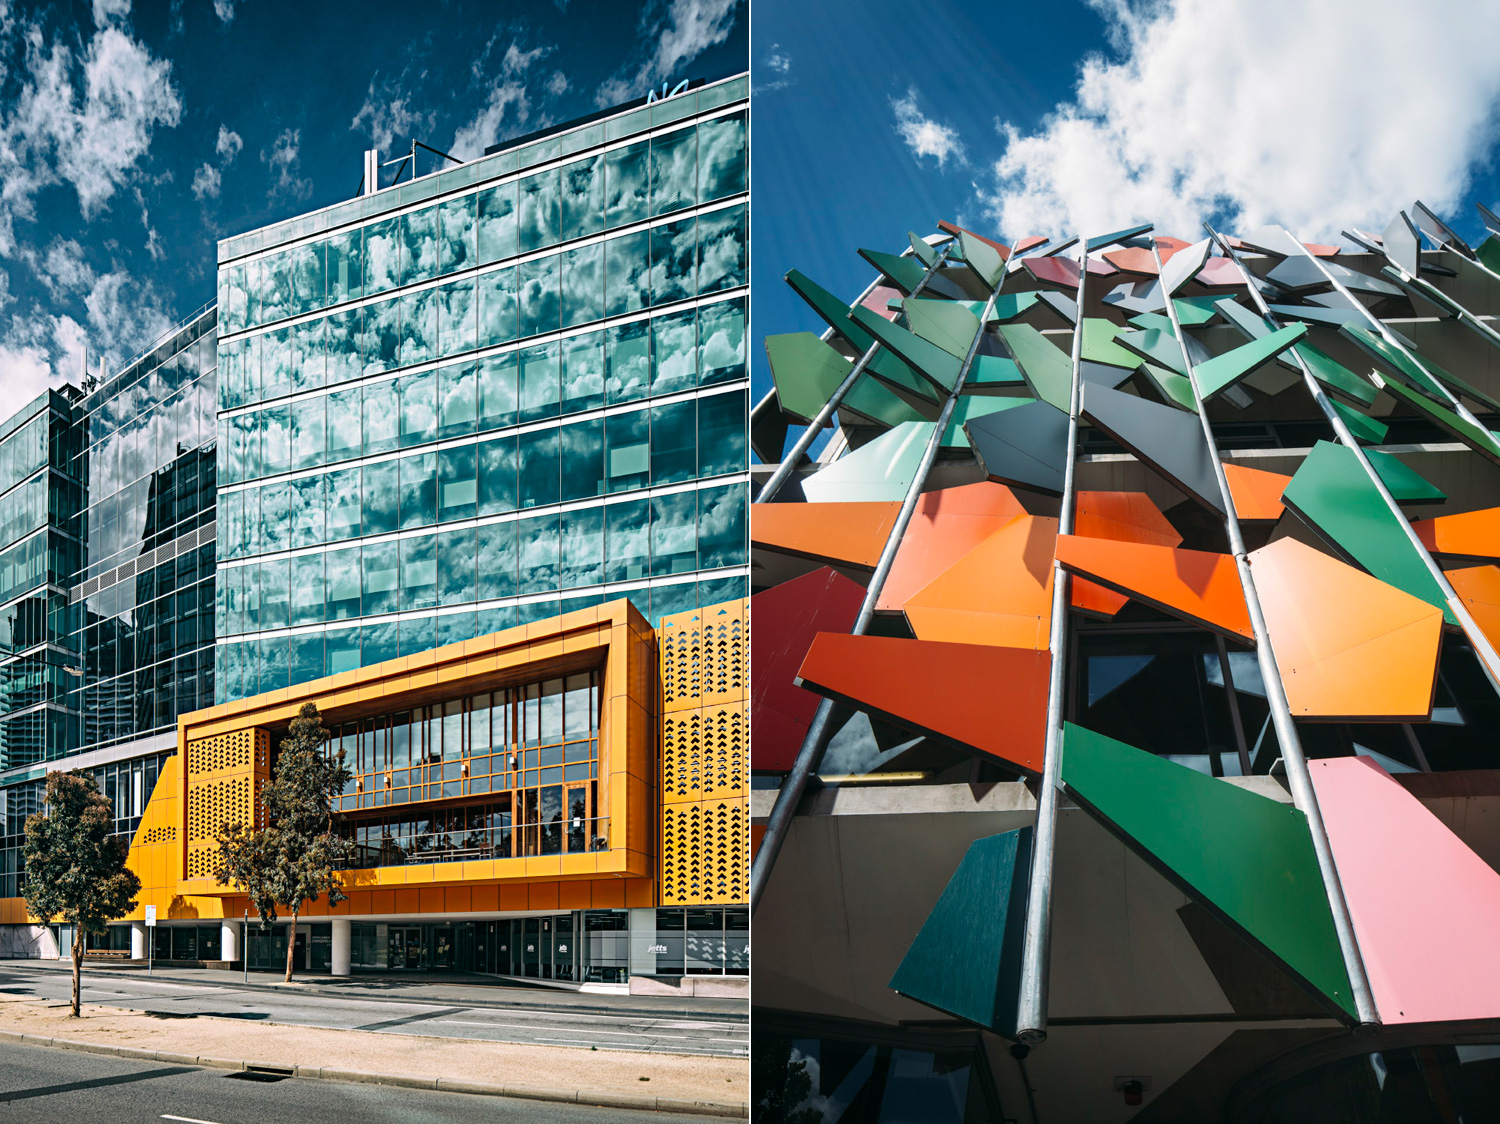 017-Melbourne-Architecture.jpg